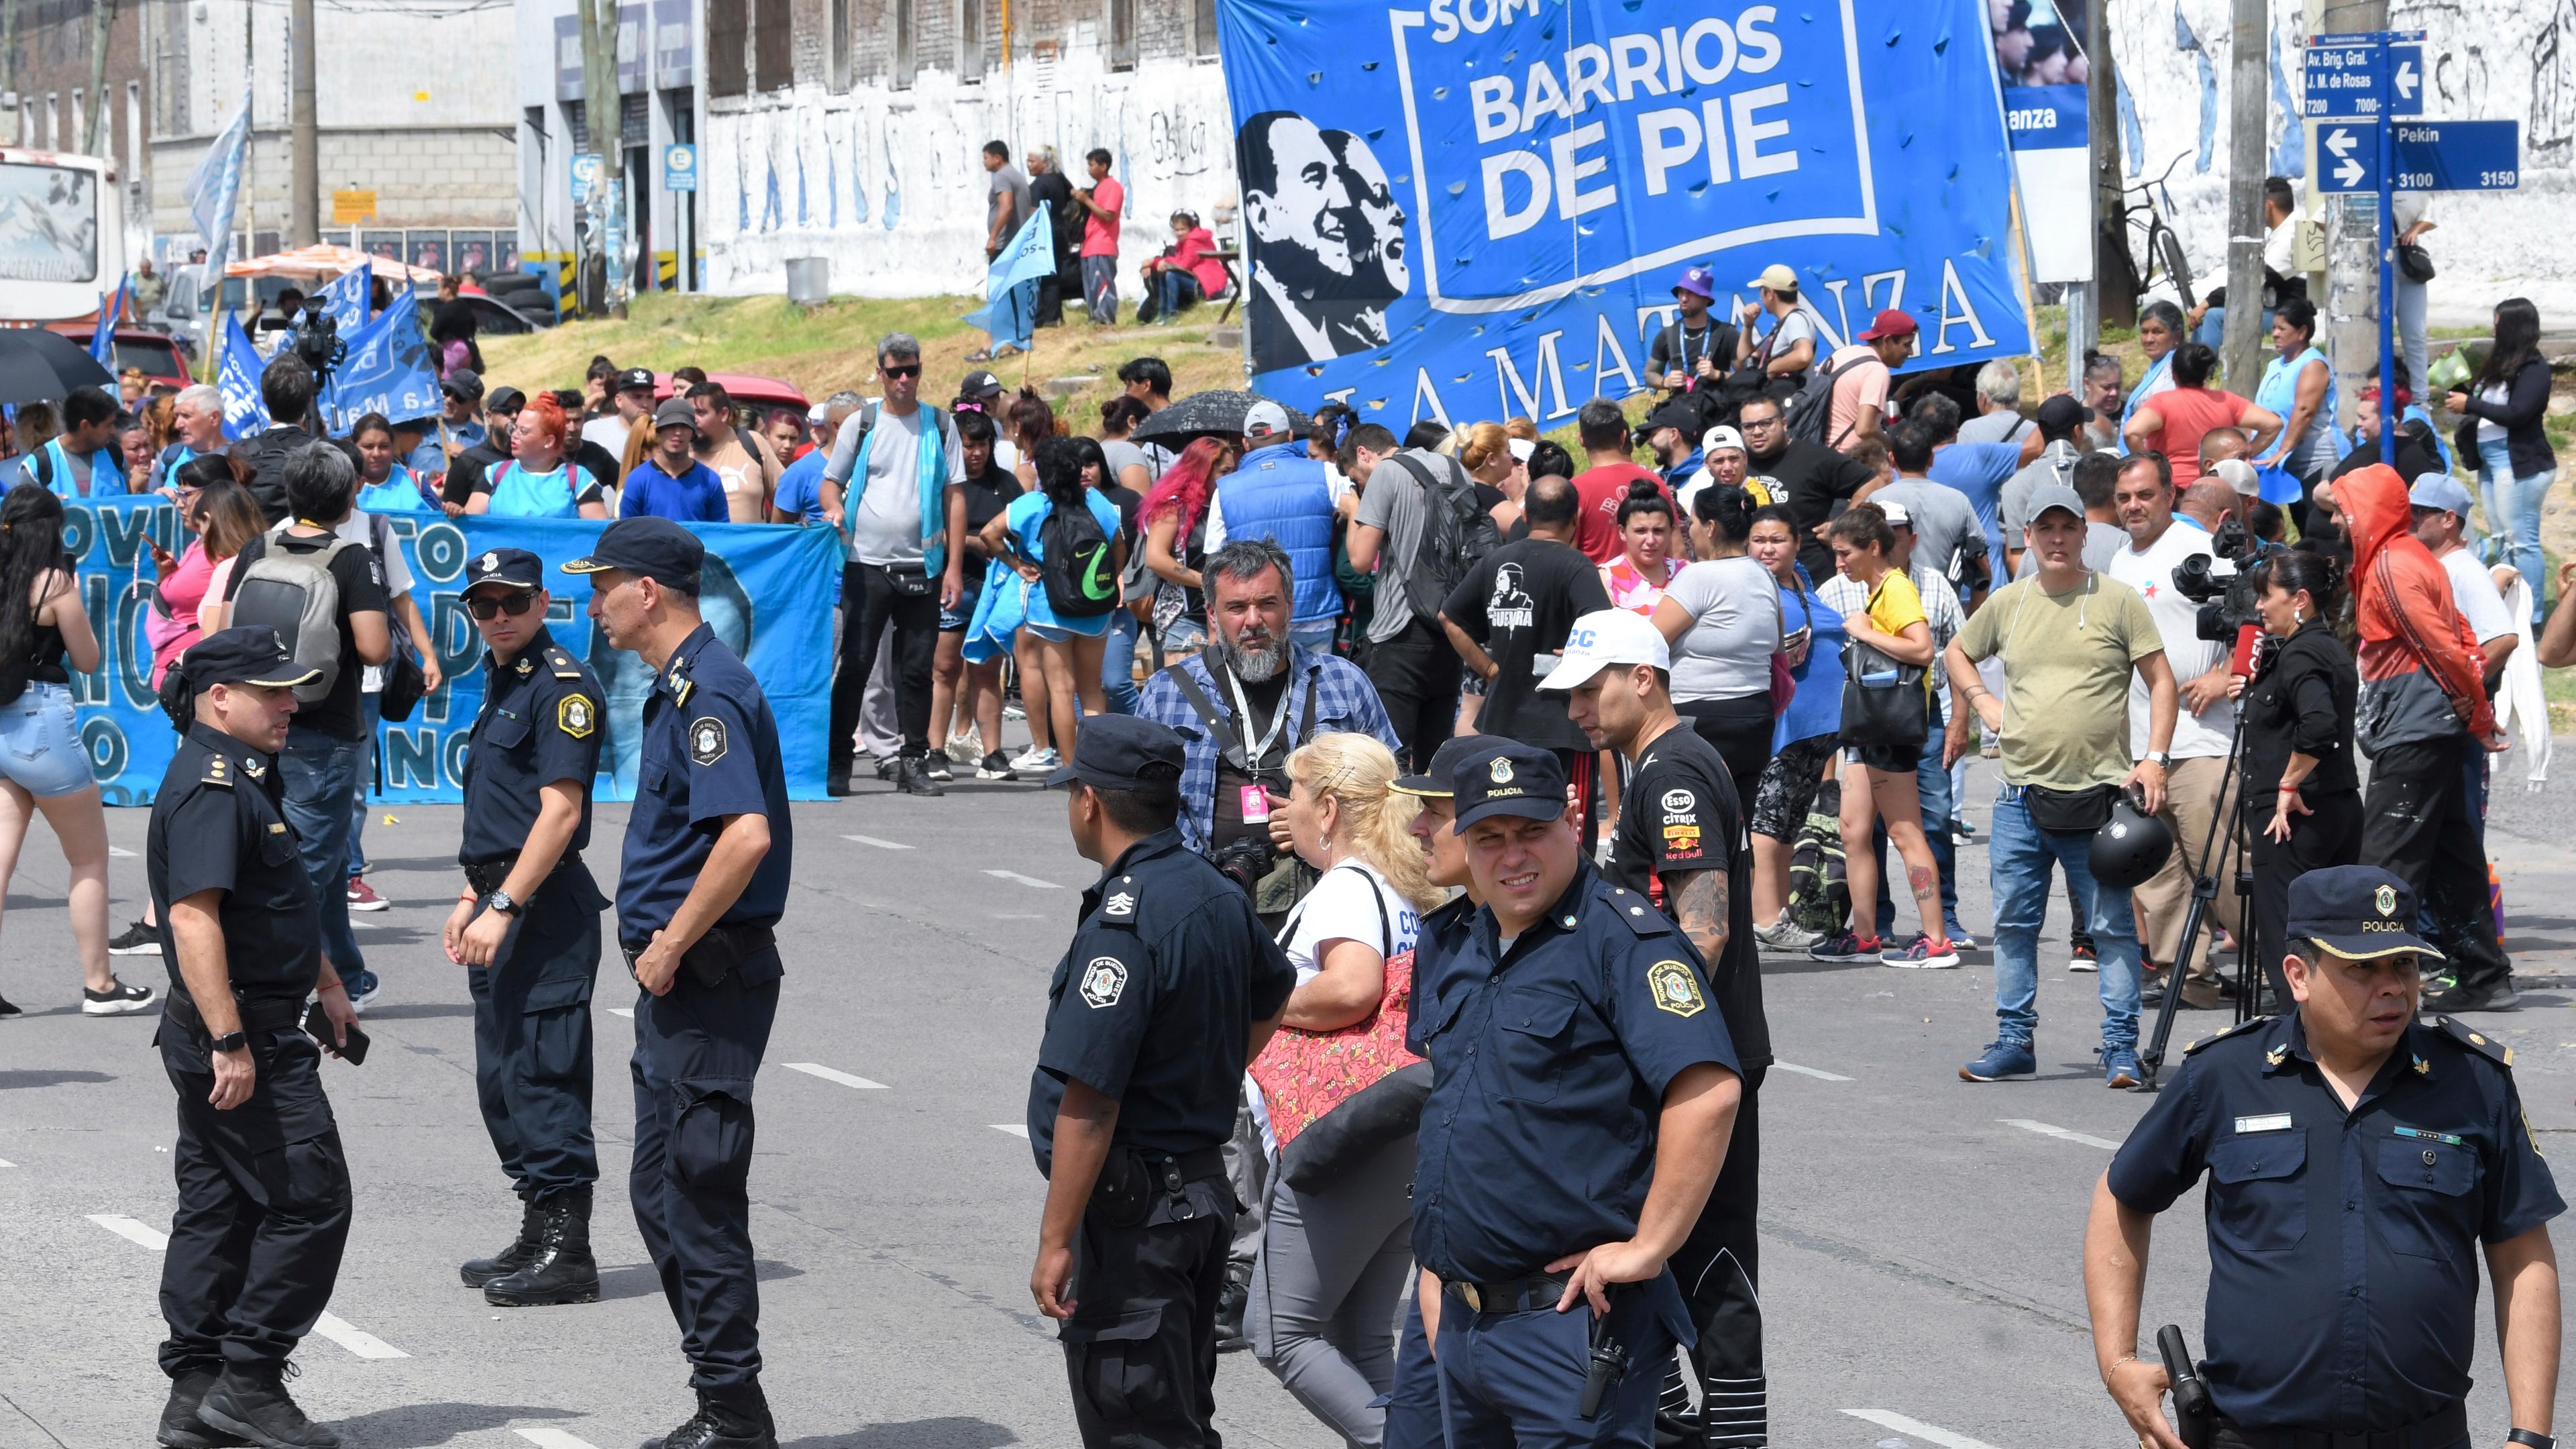 In Argentinien will der neue rechtspopulistische Präsident Javier Milei den Sozialstaat radikal umbauen. Die angekündigten Maßnahmen lösen bereits Proteste aus.